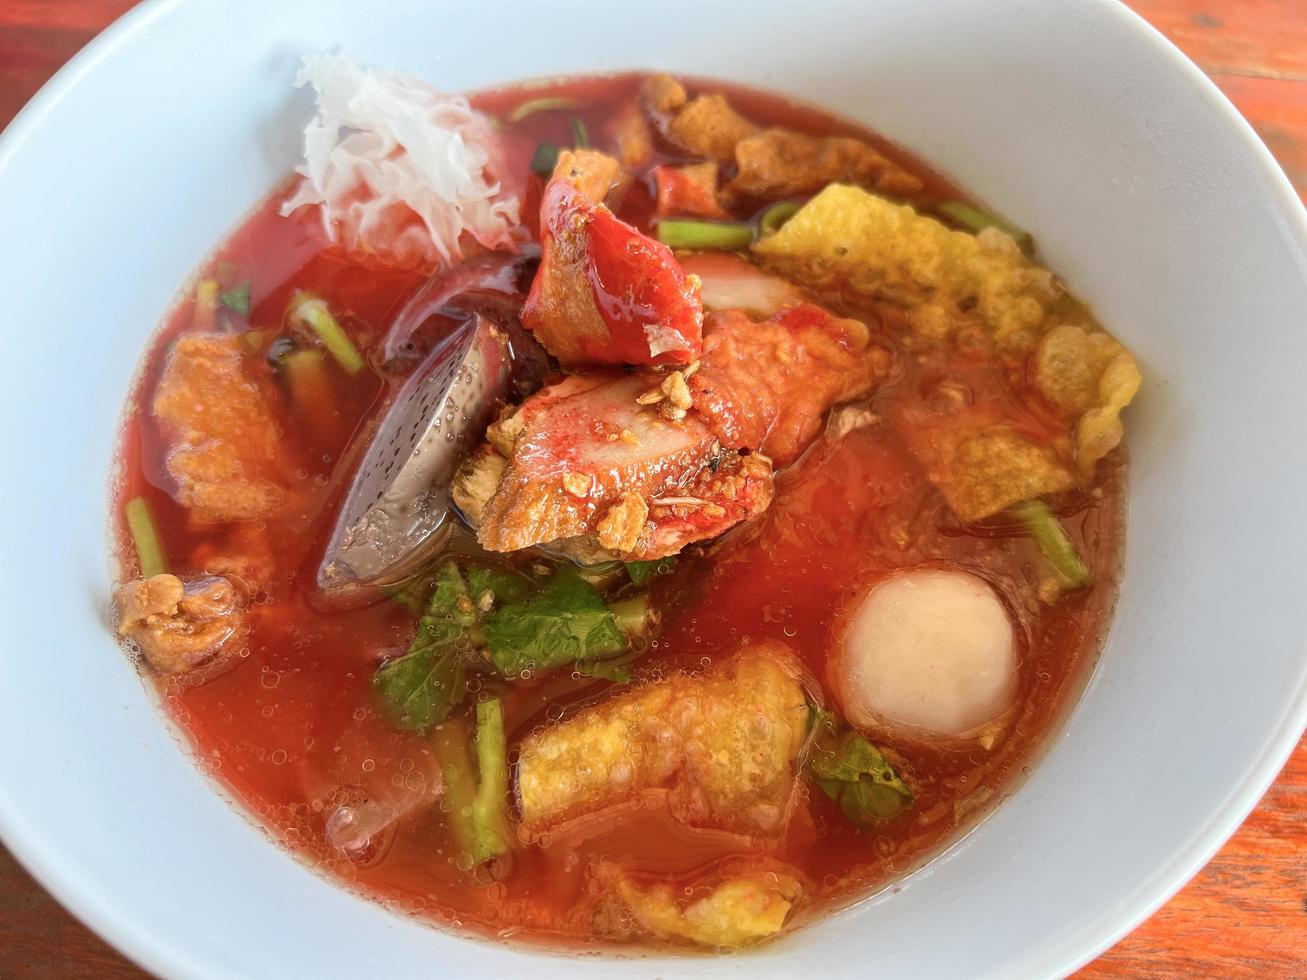 essen thailändische nudeln mit sortiertem tofu und fischbällchen in roter suppe - asiatische flache nudeln mit rosa meeresfrüchten auf suppenschüssel foto